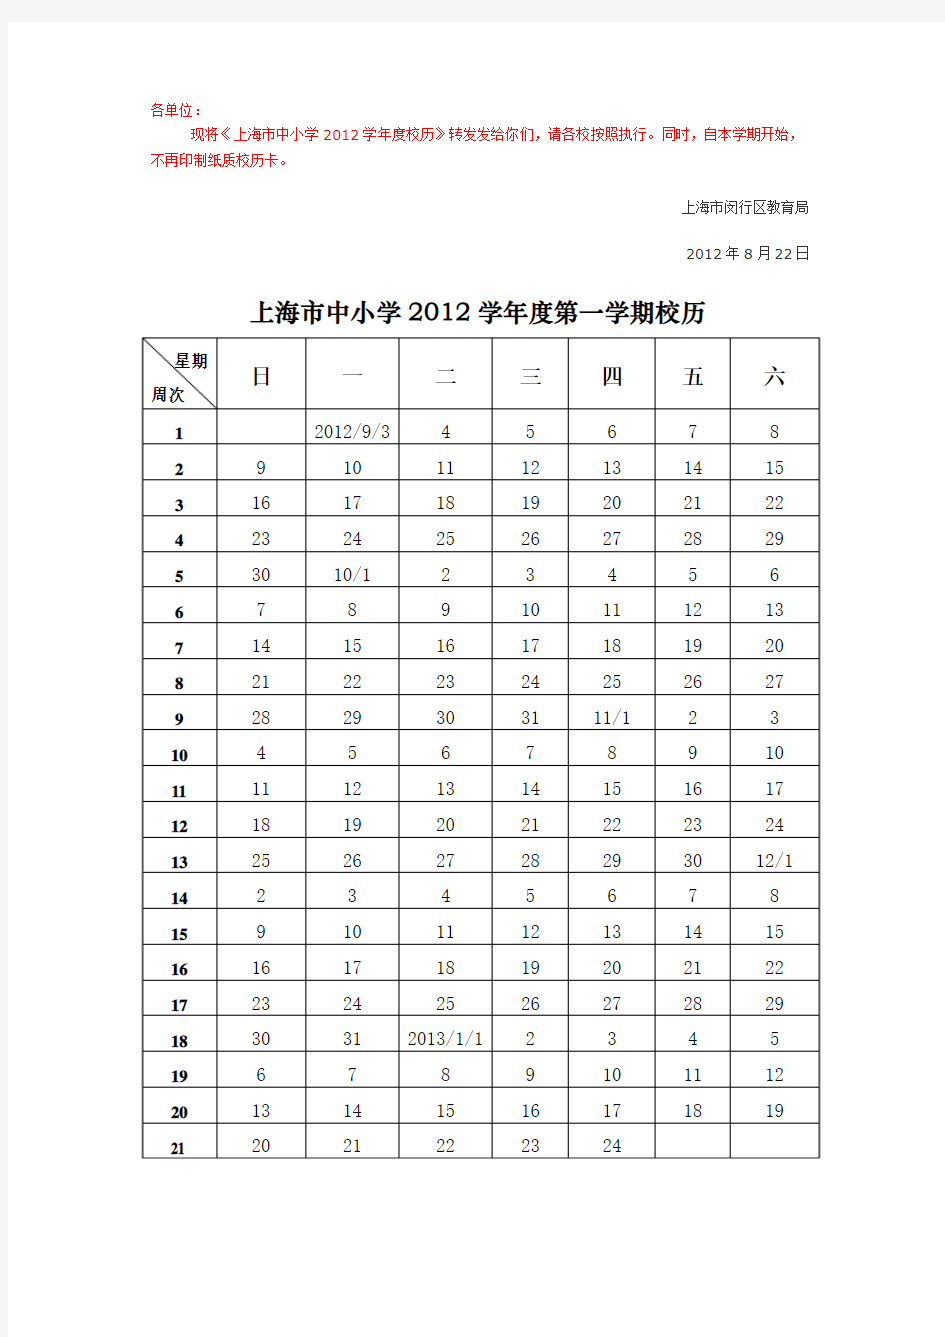 上海市中小学2012学年度校历